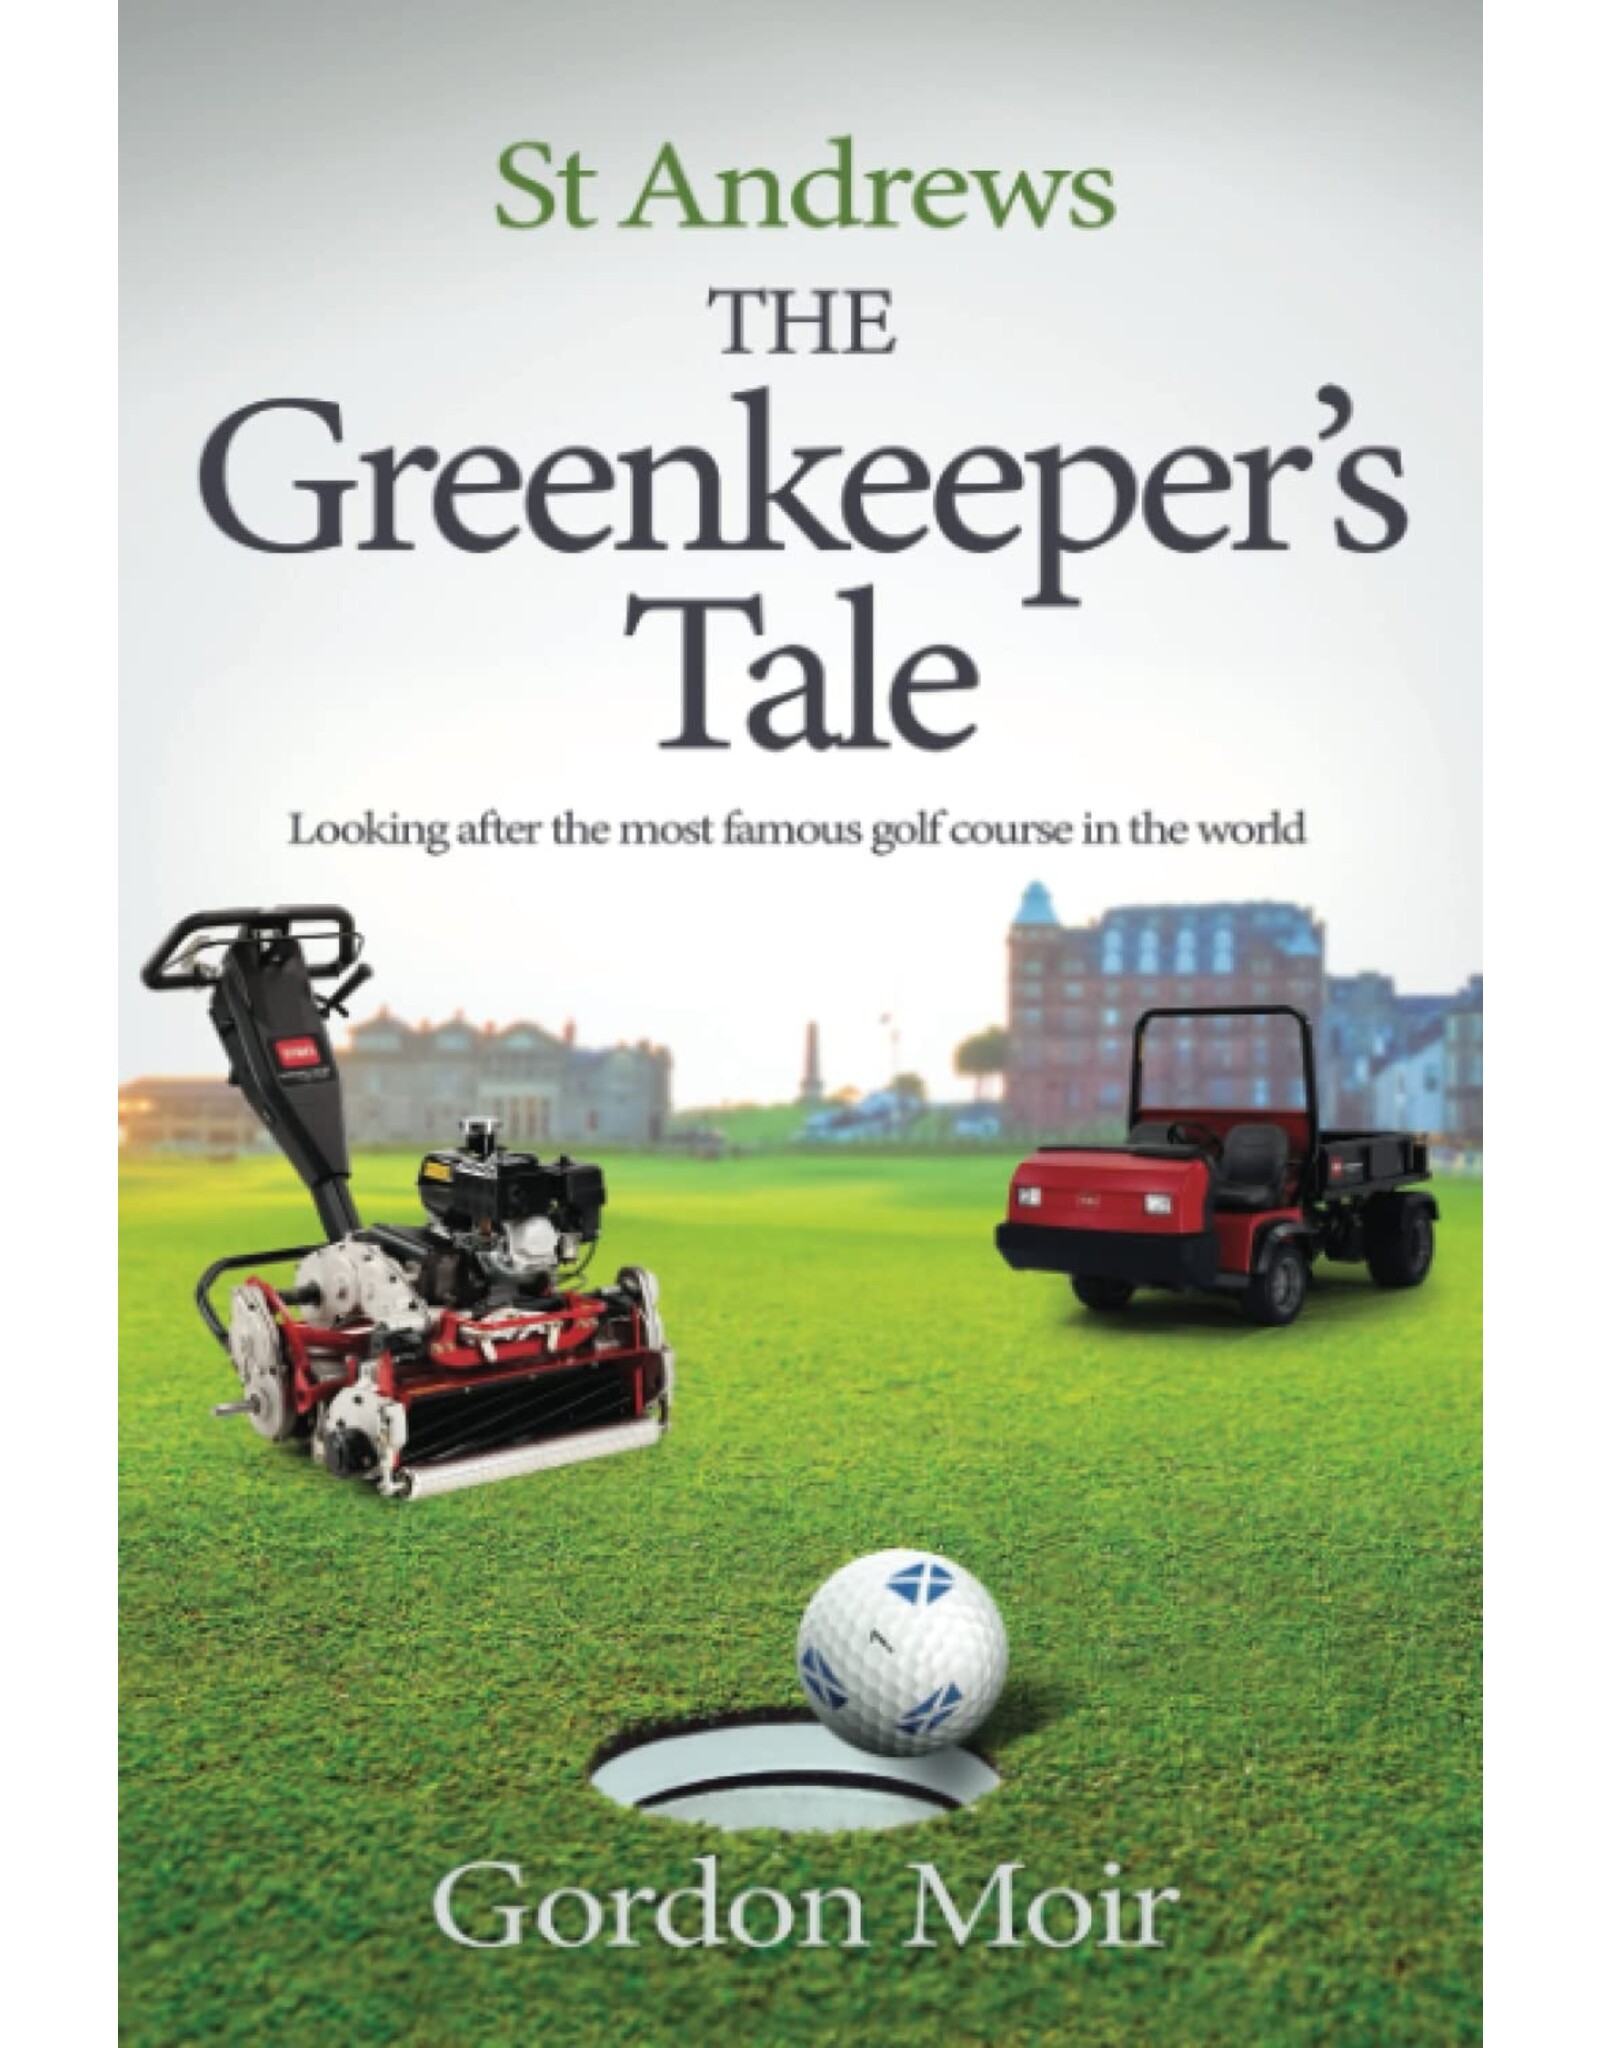 The Greenkeeper's Tale